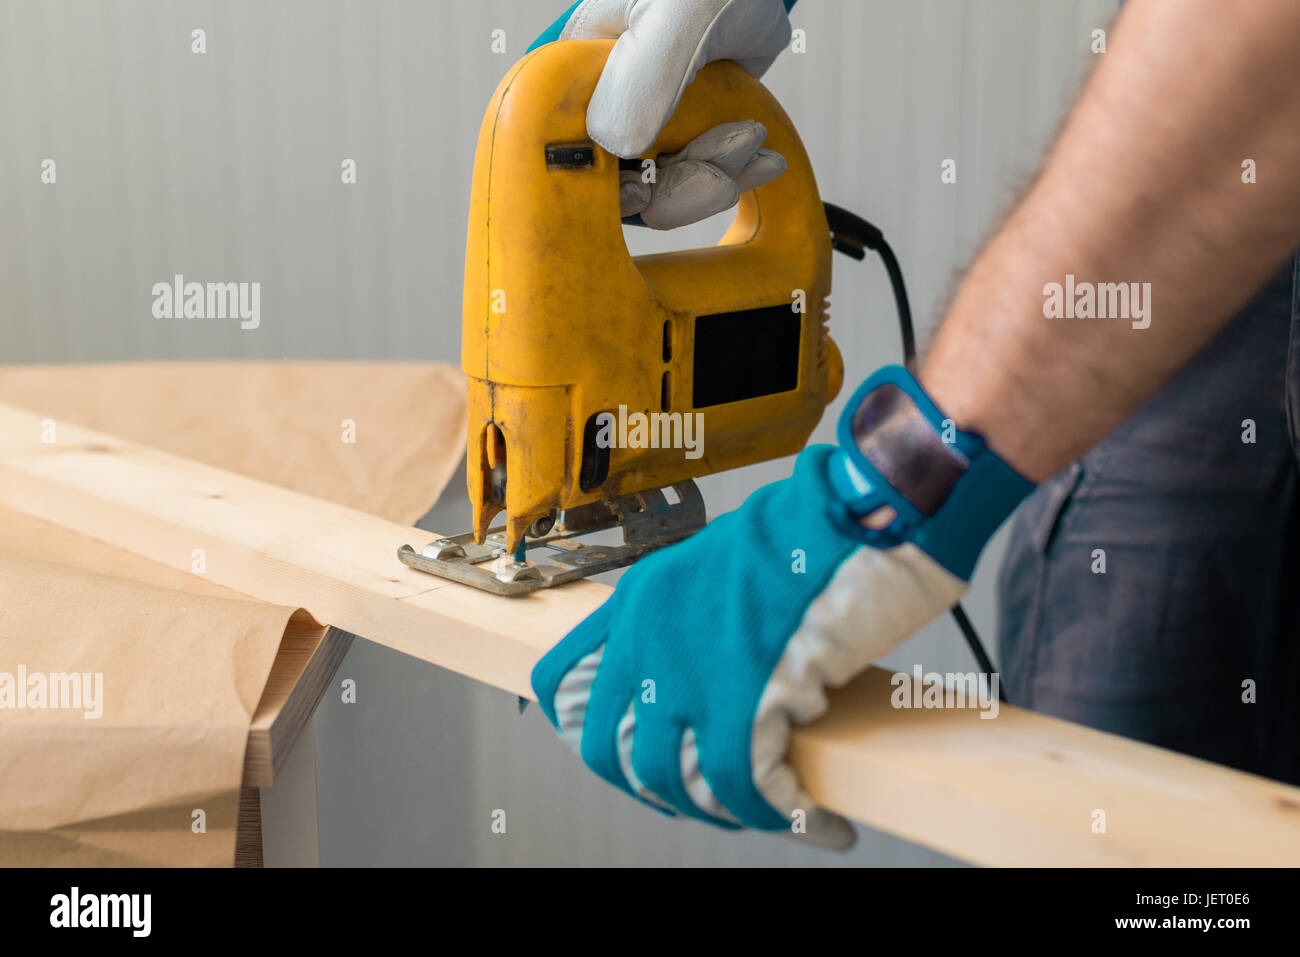 Falegname tuttofare mediante elettropompa comodo visto su legno tabella di officina Foto Stock